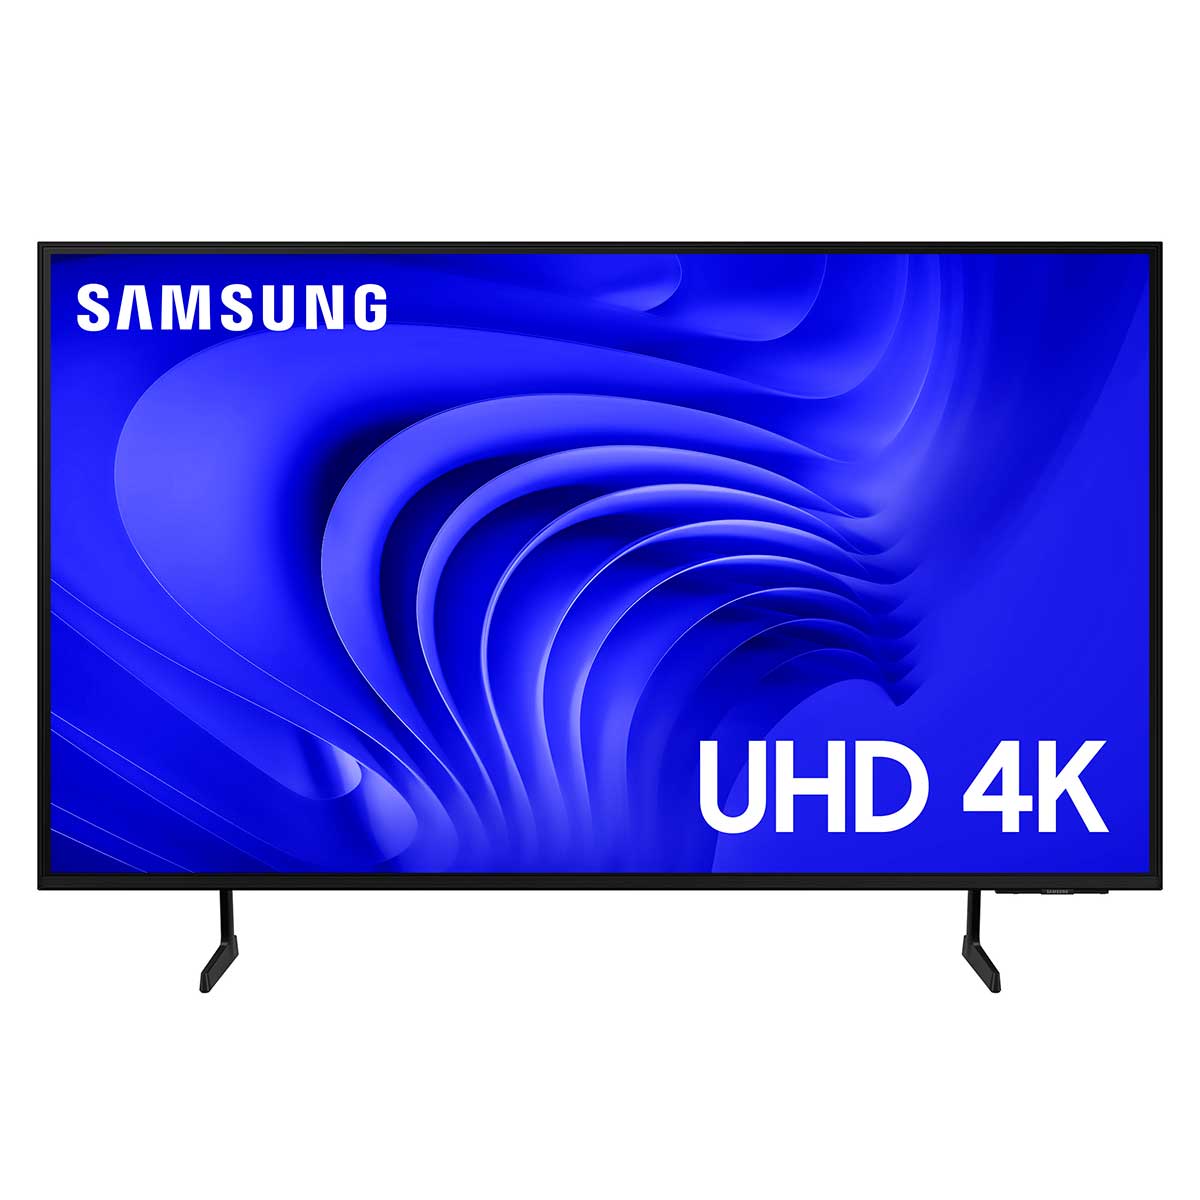 Smart TV 55" UHD Samsung 4K Processador Crystal 4K Gaming Hub Alexa built in - 55DU7700